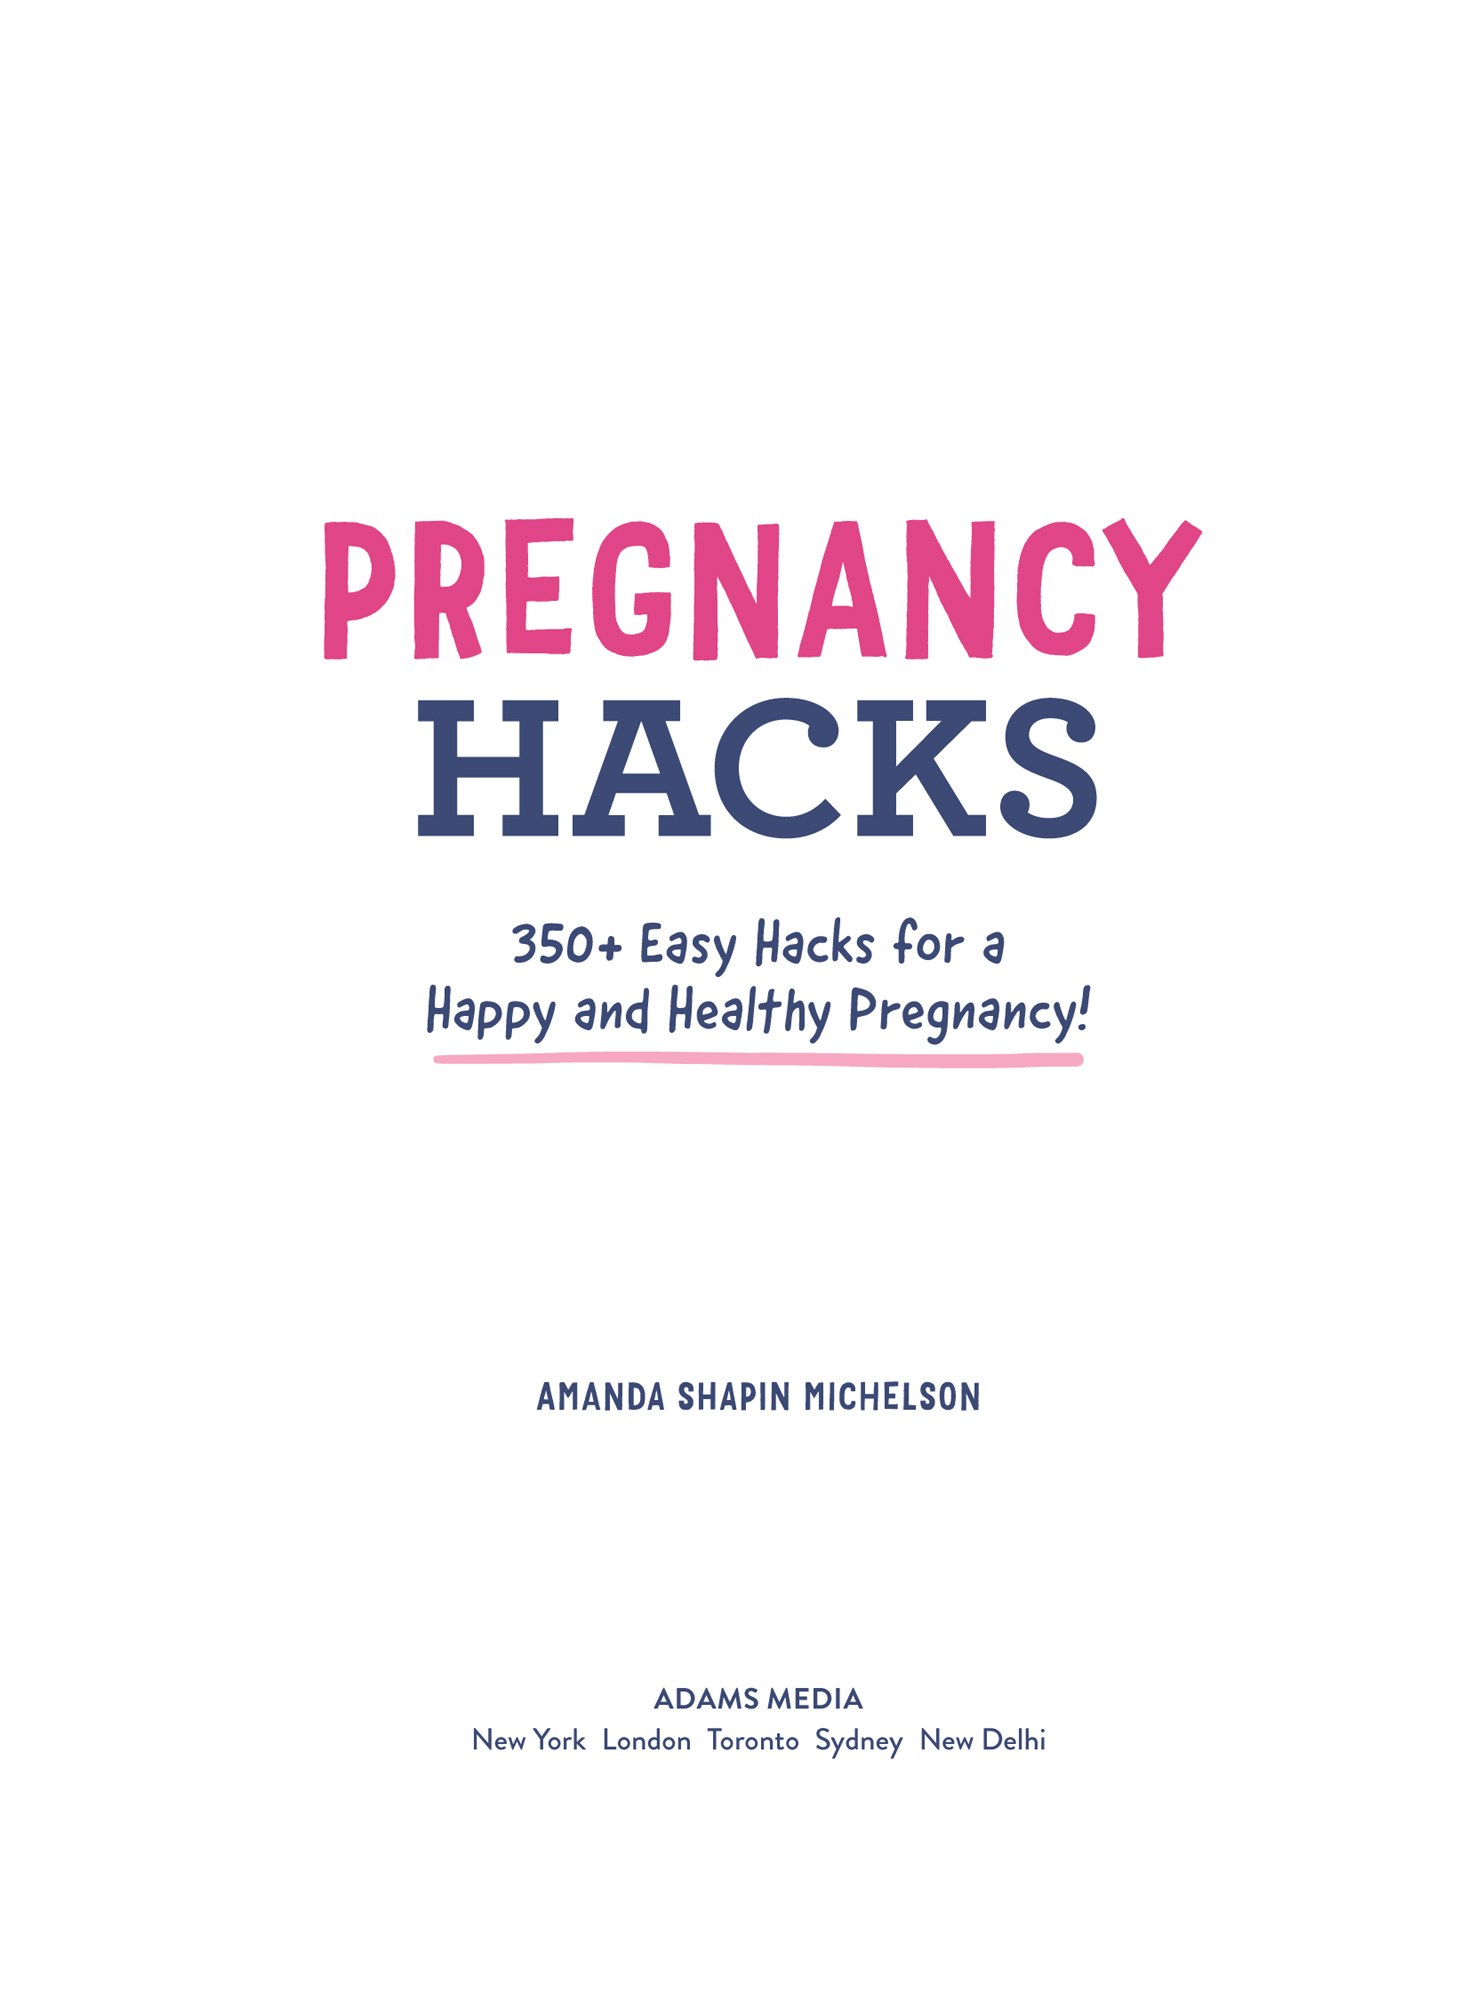 Pregnancy Hacks 350 Easy Hacks for a Happy and Healthy Pregnancy - image 2